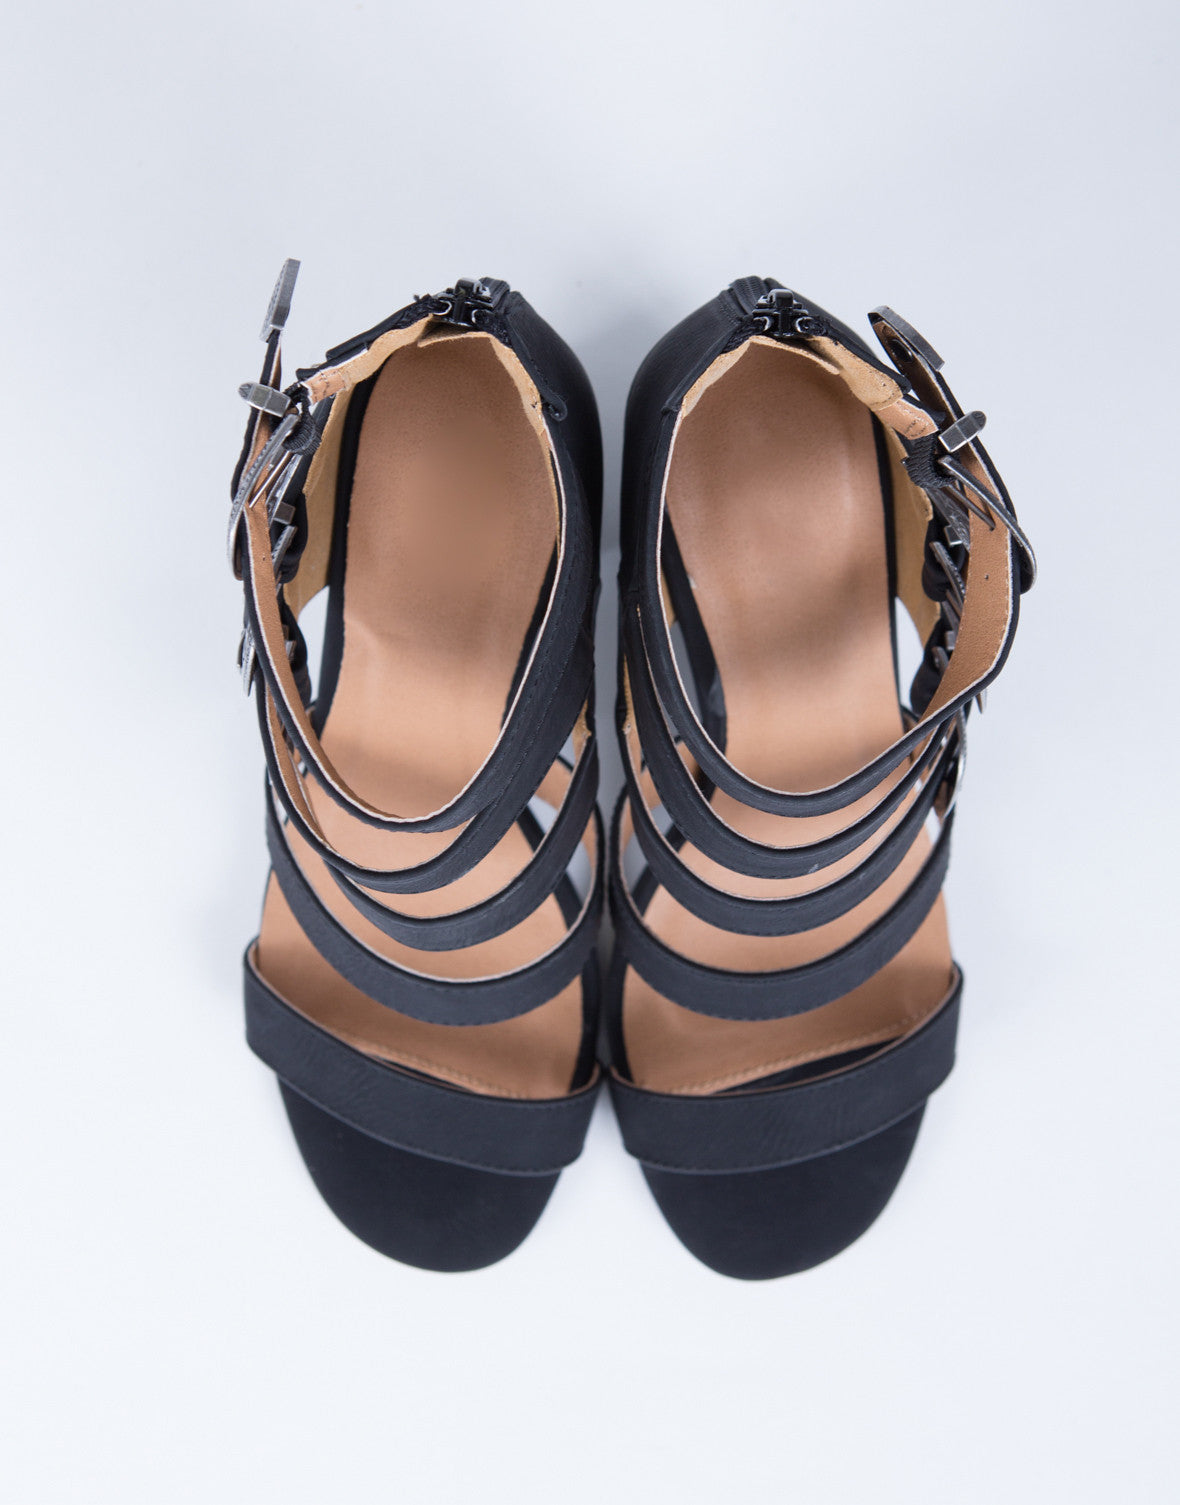 Western Buckled Sandal Heels - Black Leather Heels - Western Heel ...